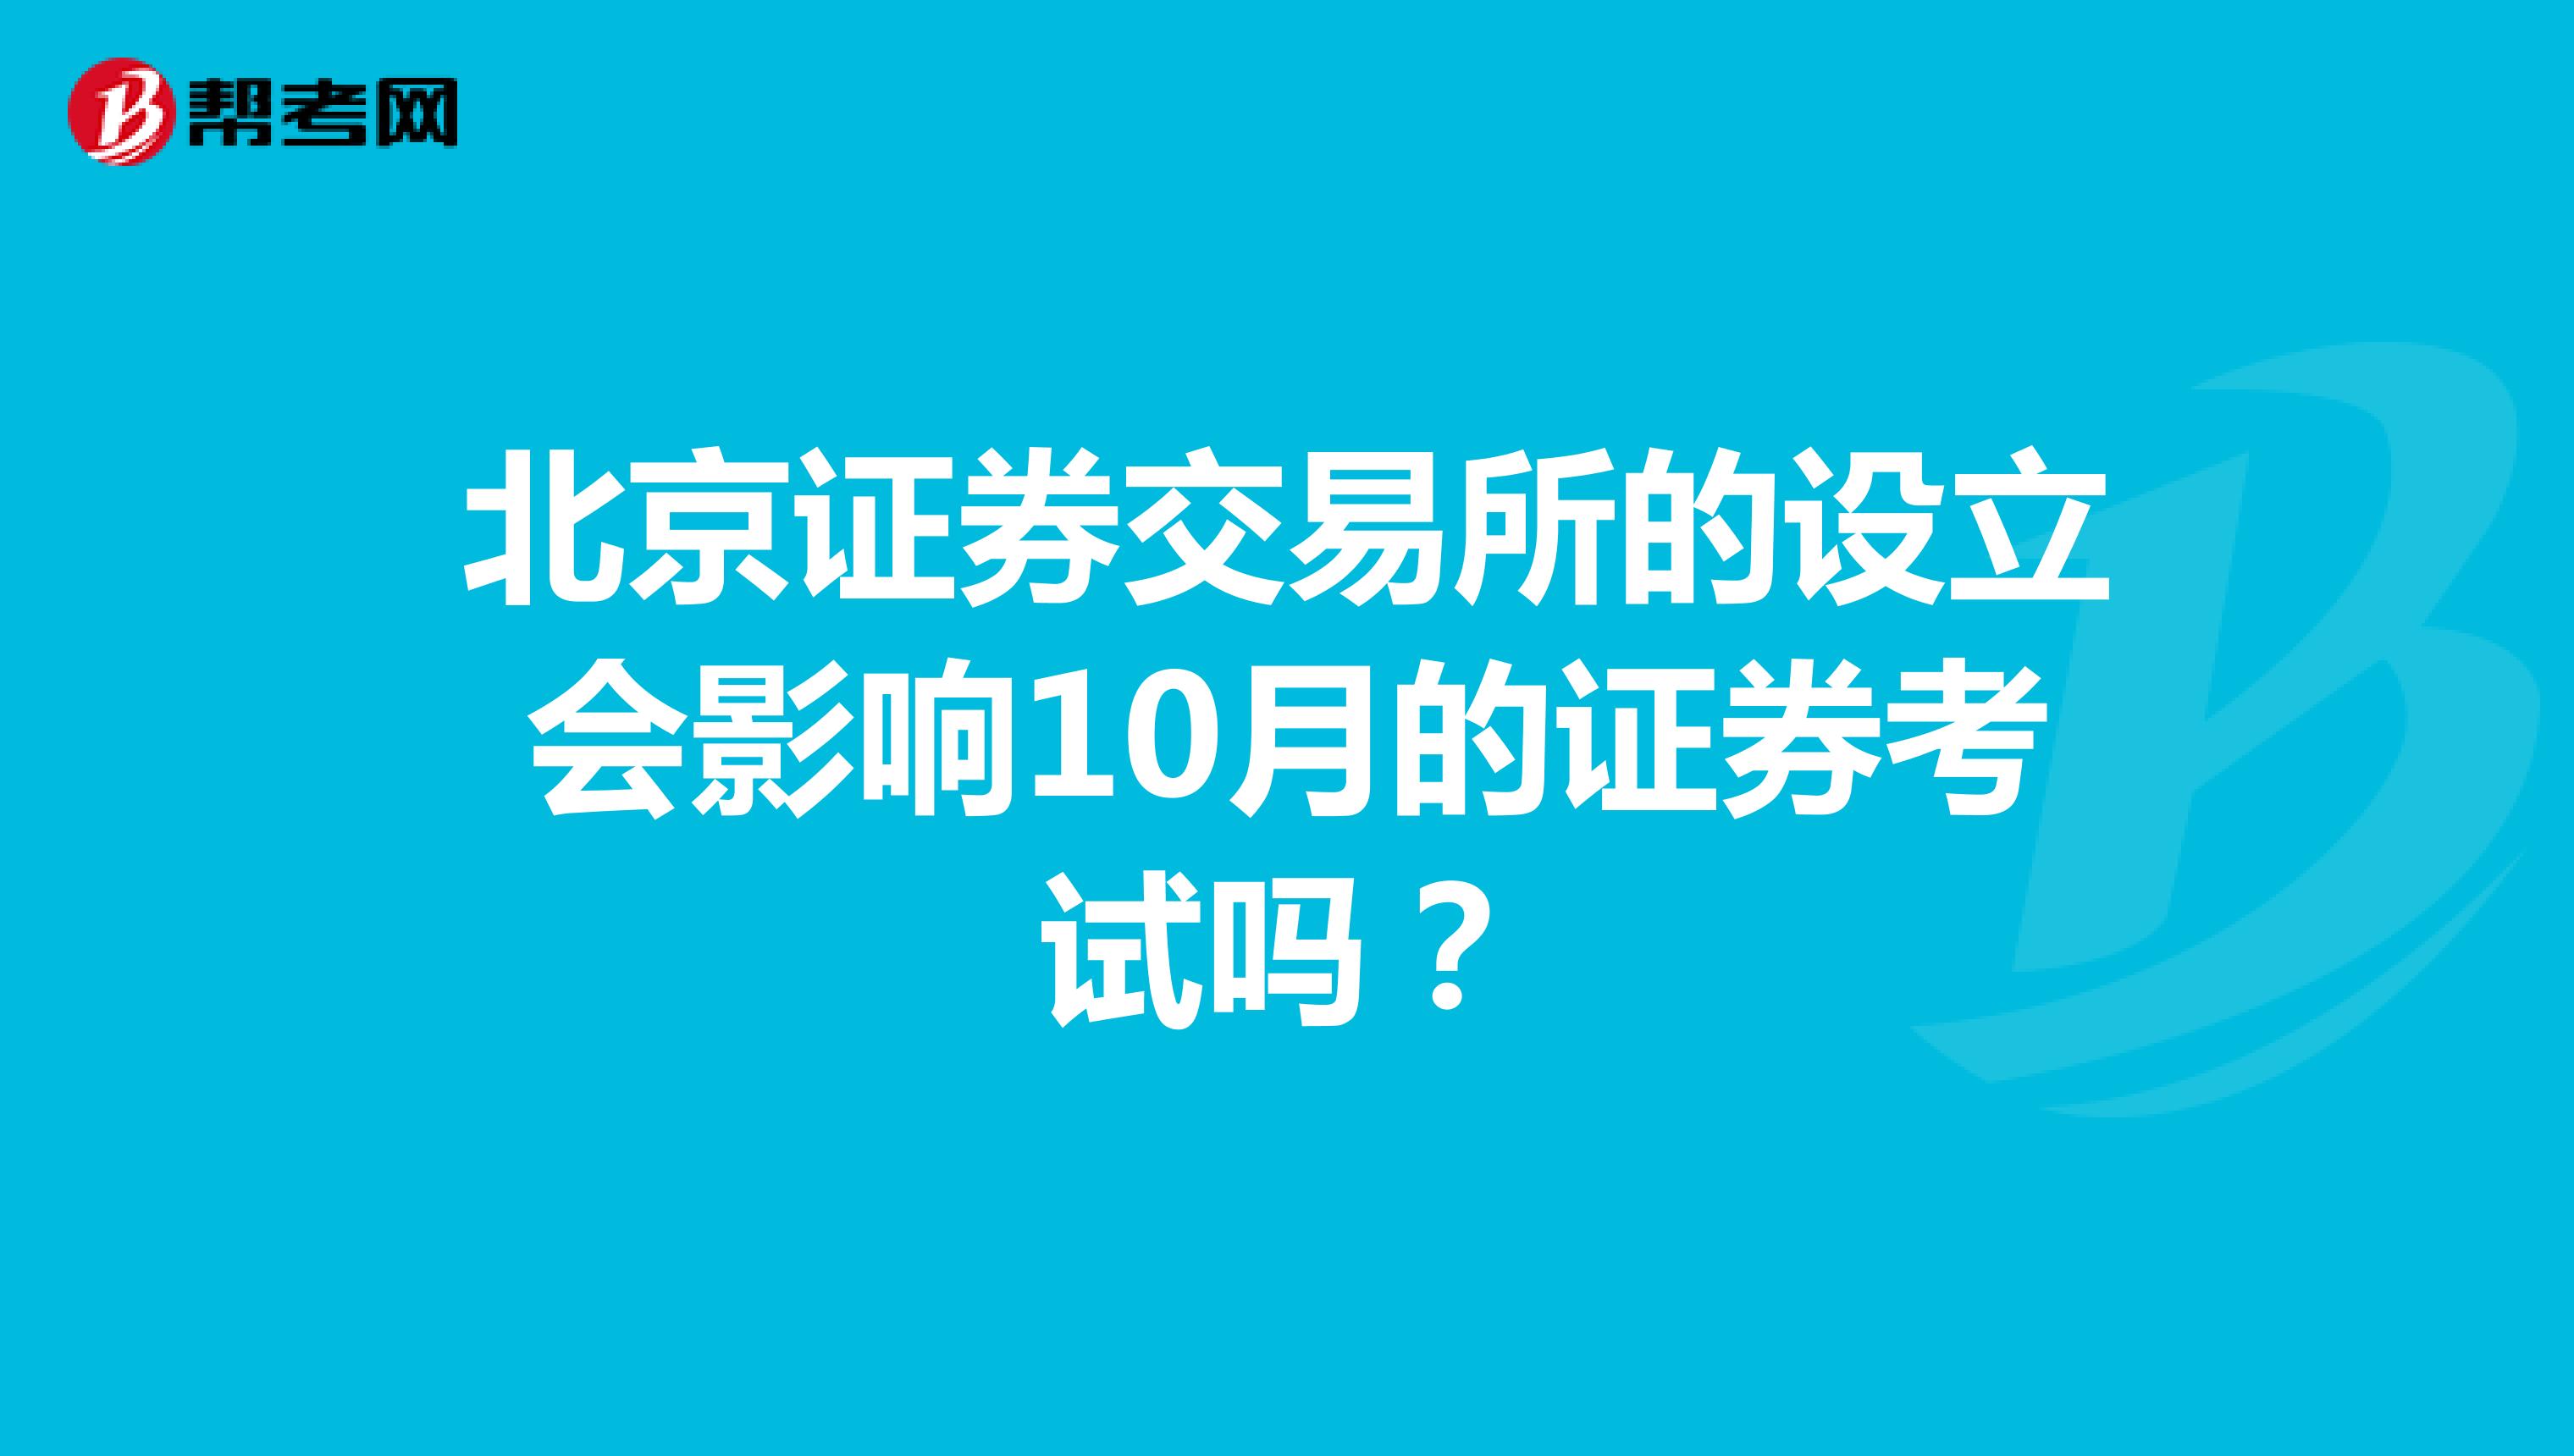 北京证券交易所的设立会影响10月的证券考试吗？